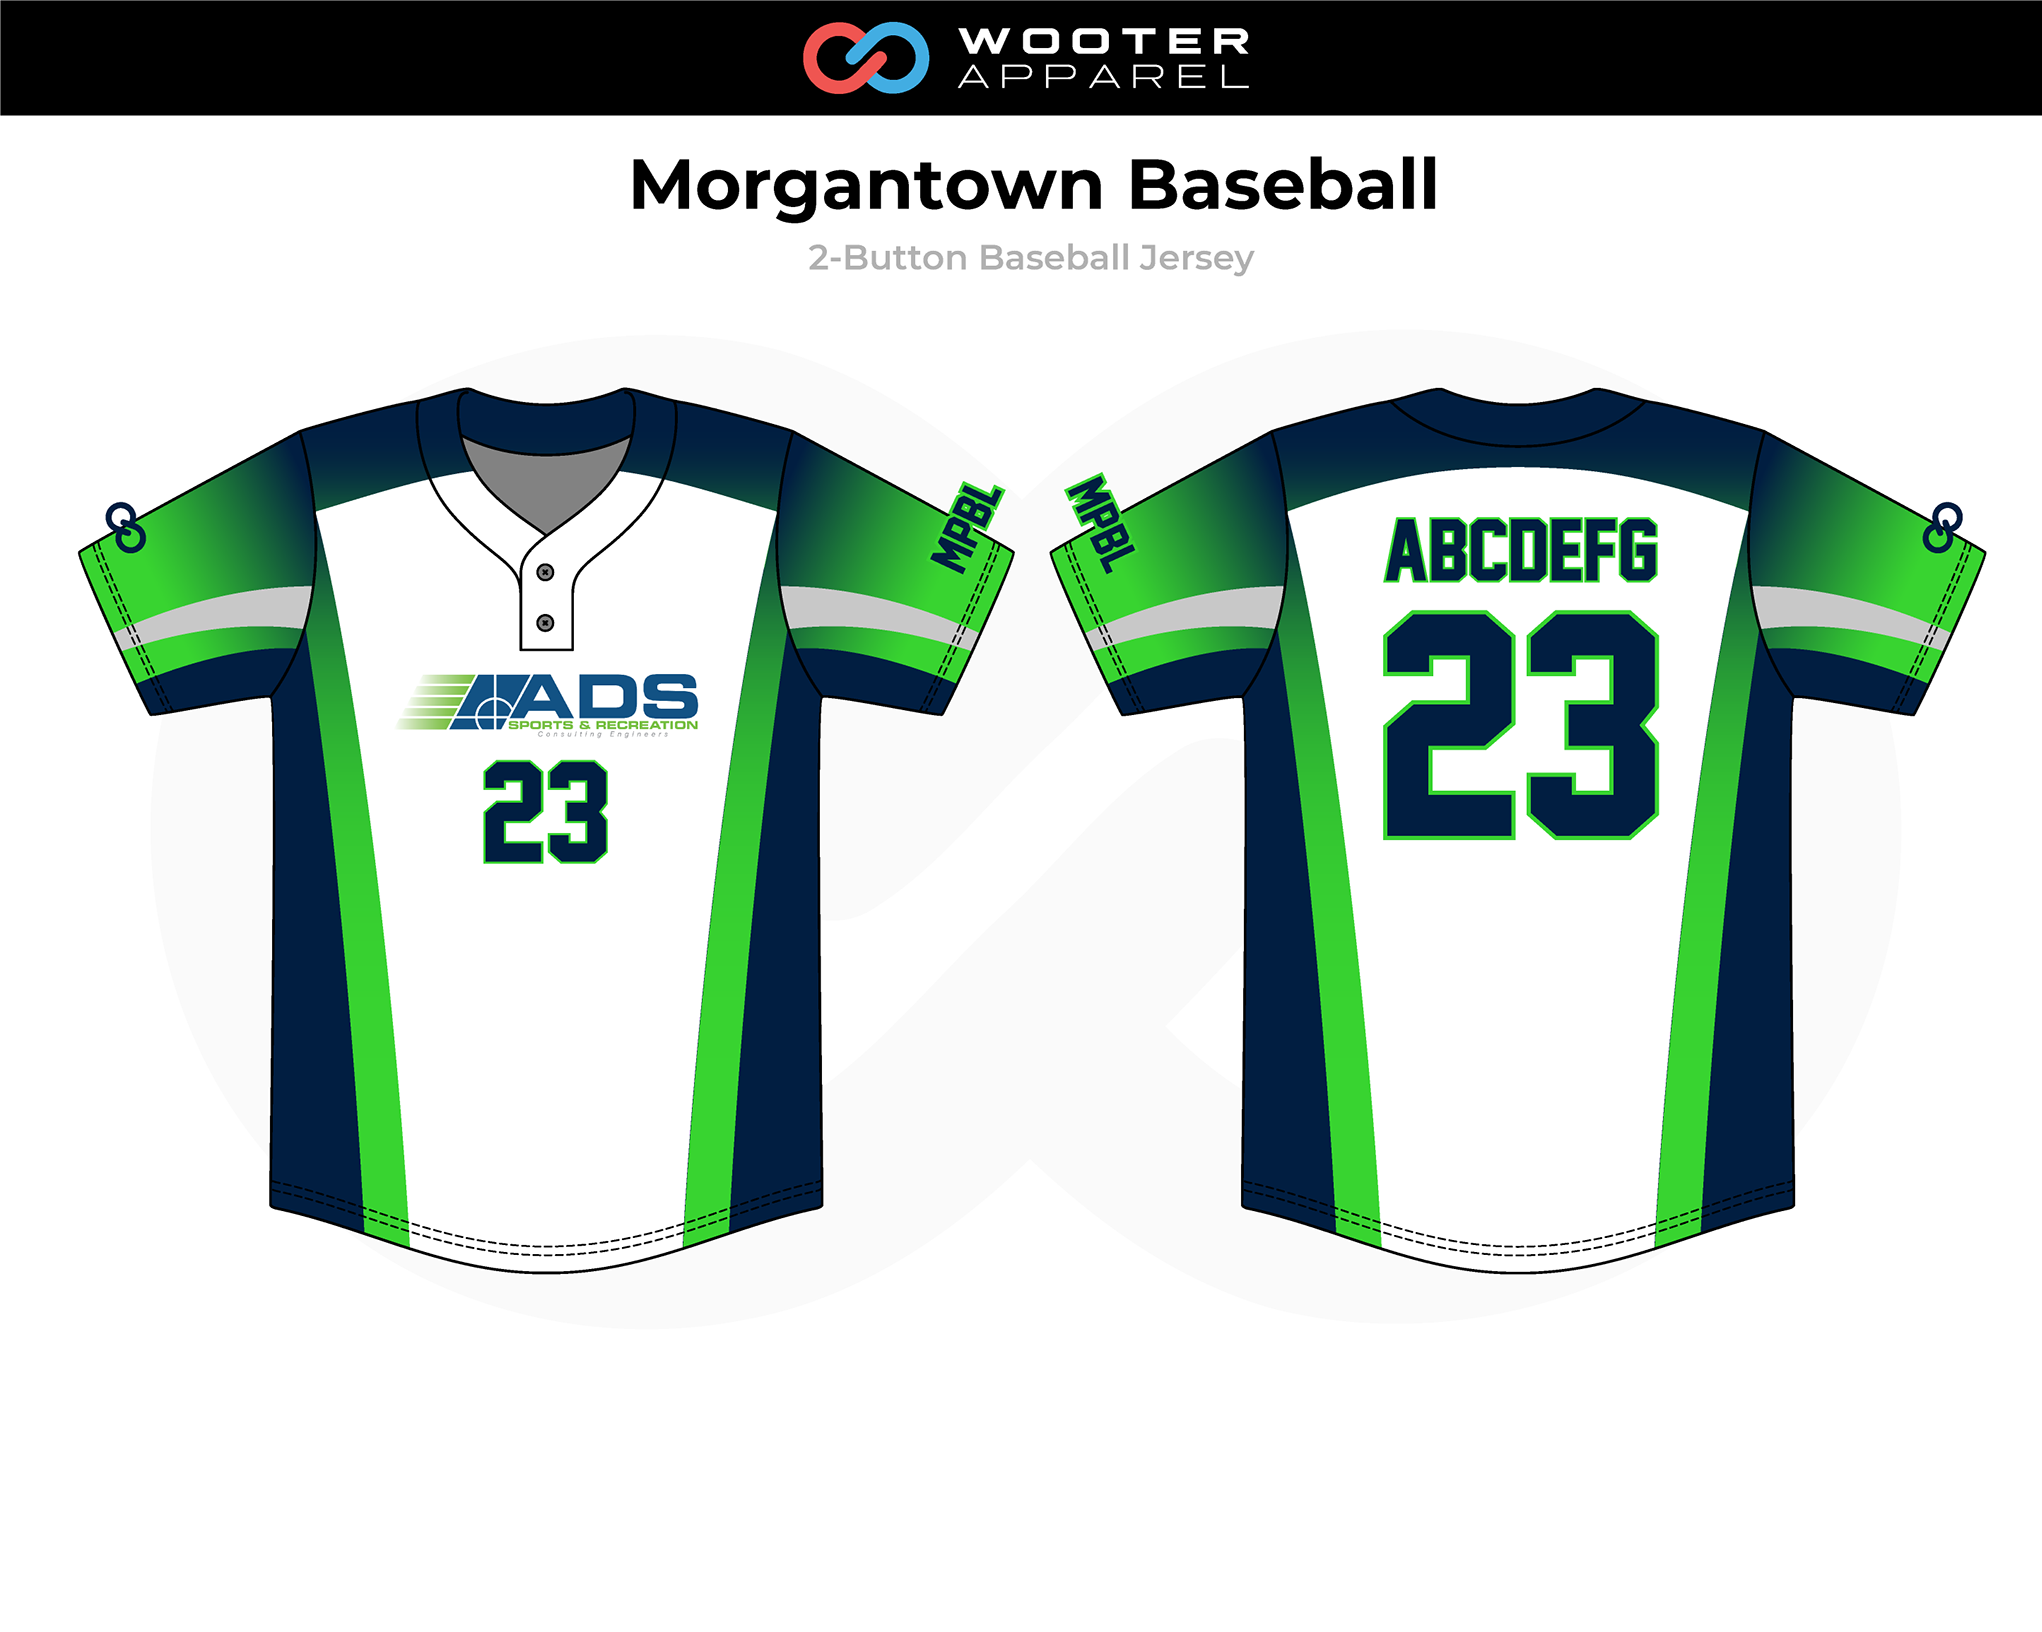 Custom Baseball Jerseys, Uniforms & Apparel, Wooter Apparel